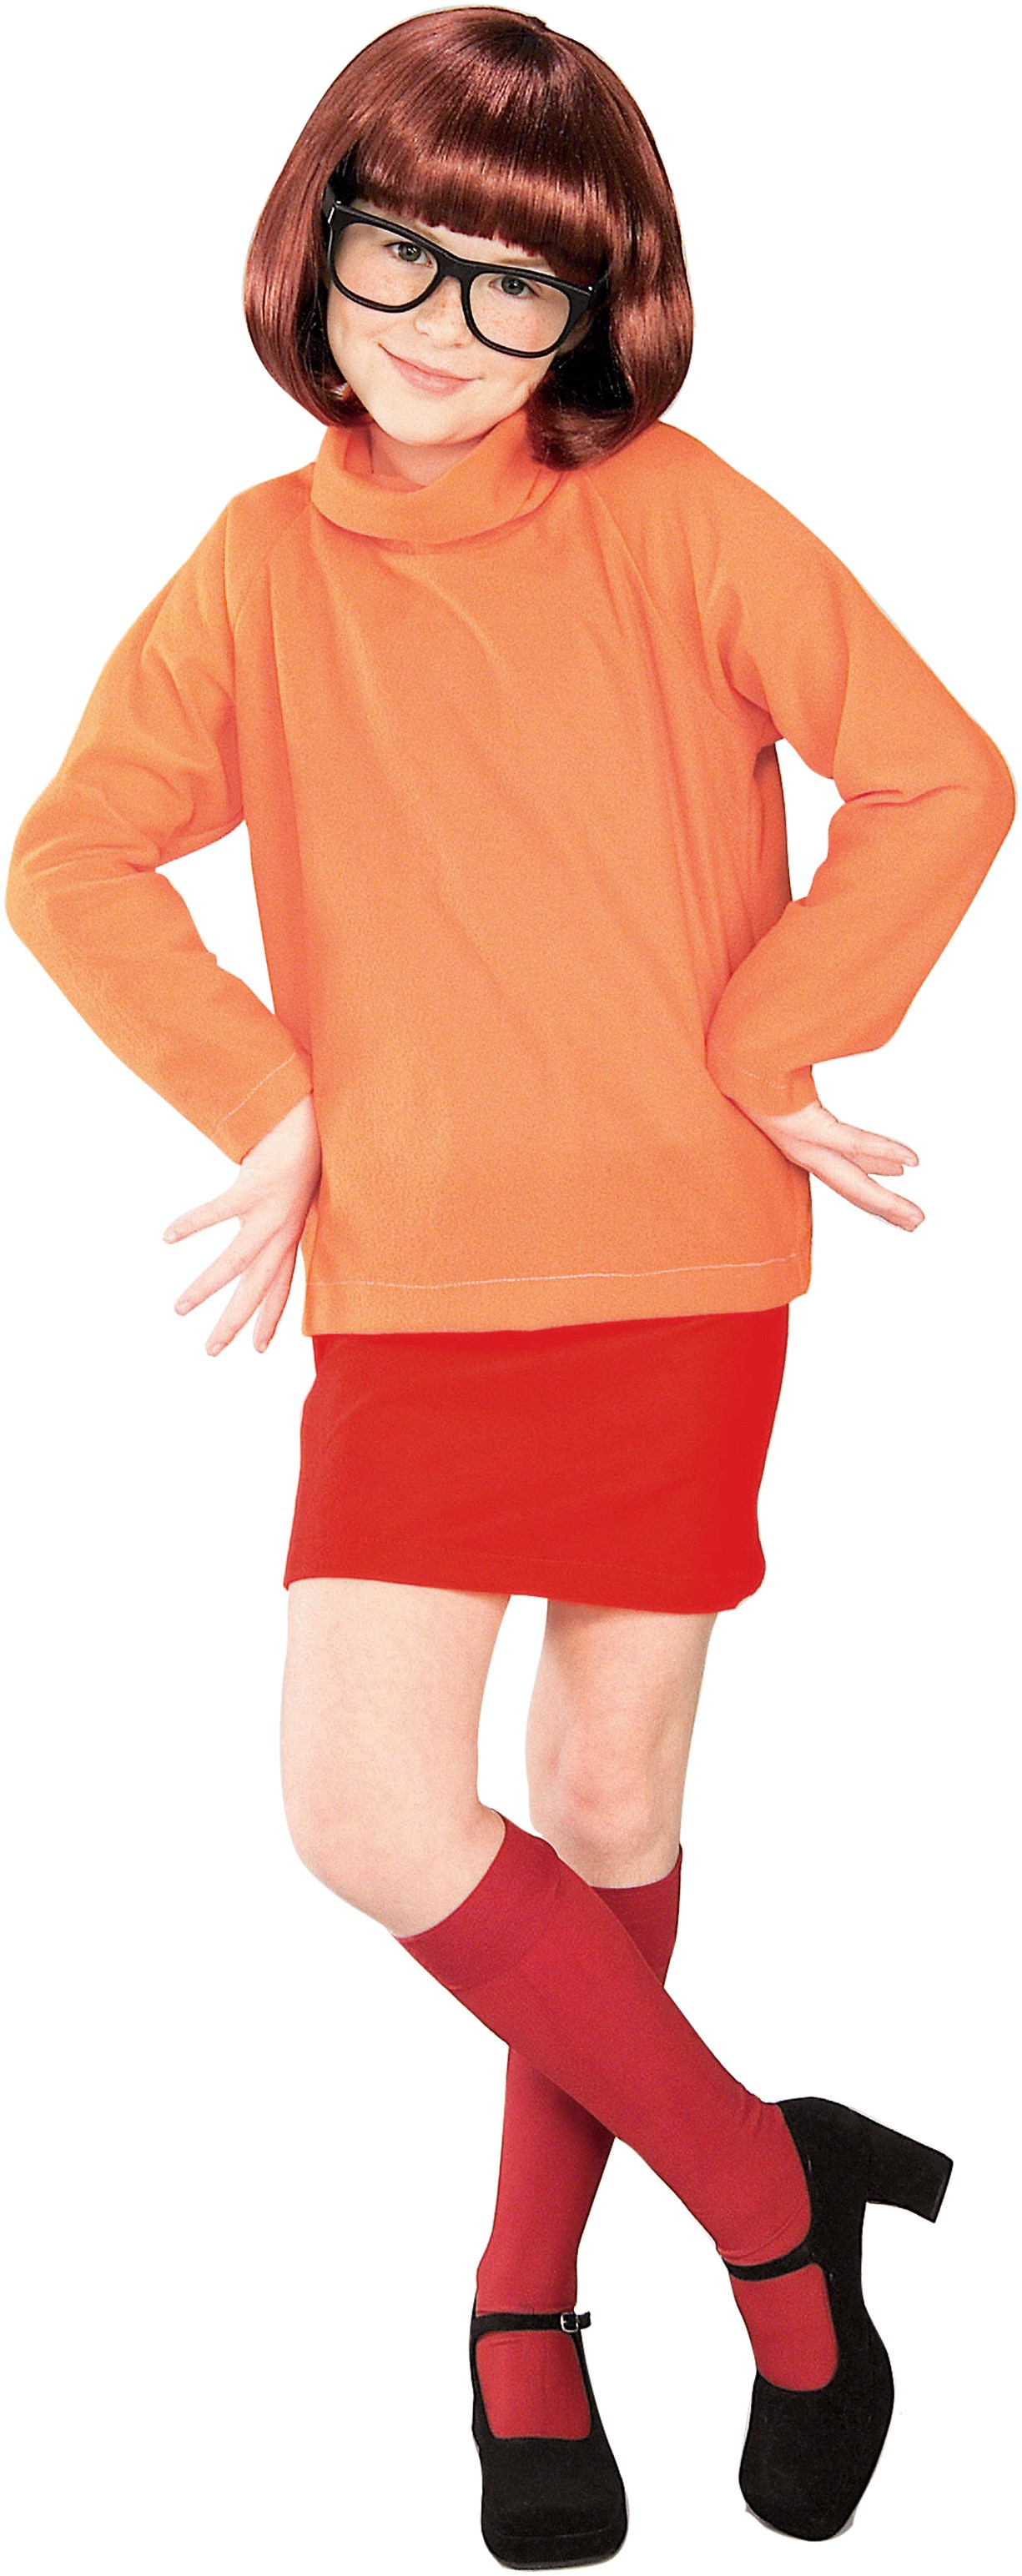 Scooby-Doo  Velma  Child Costume